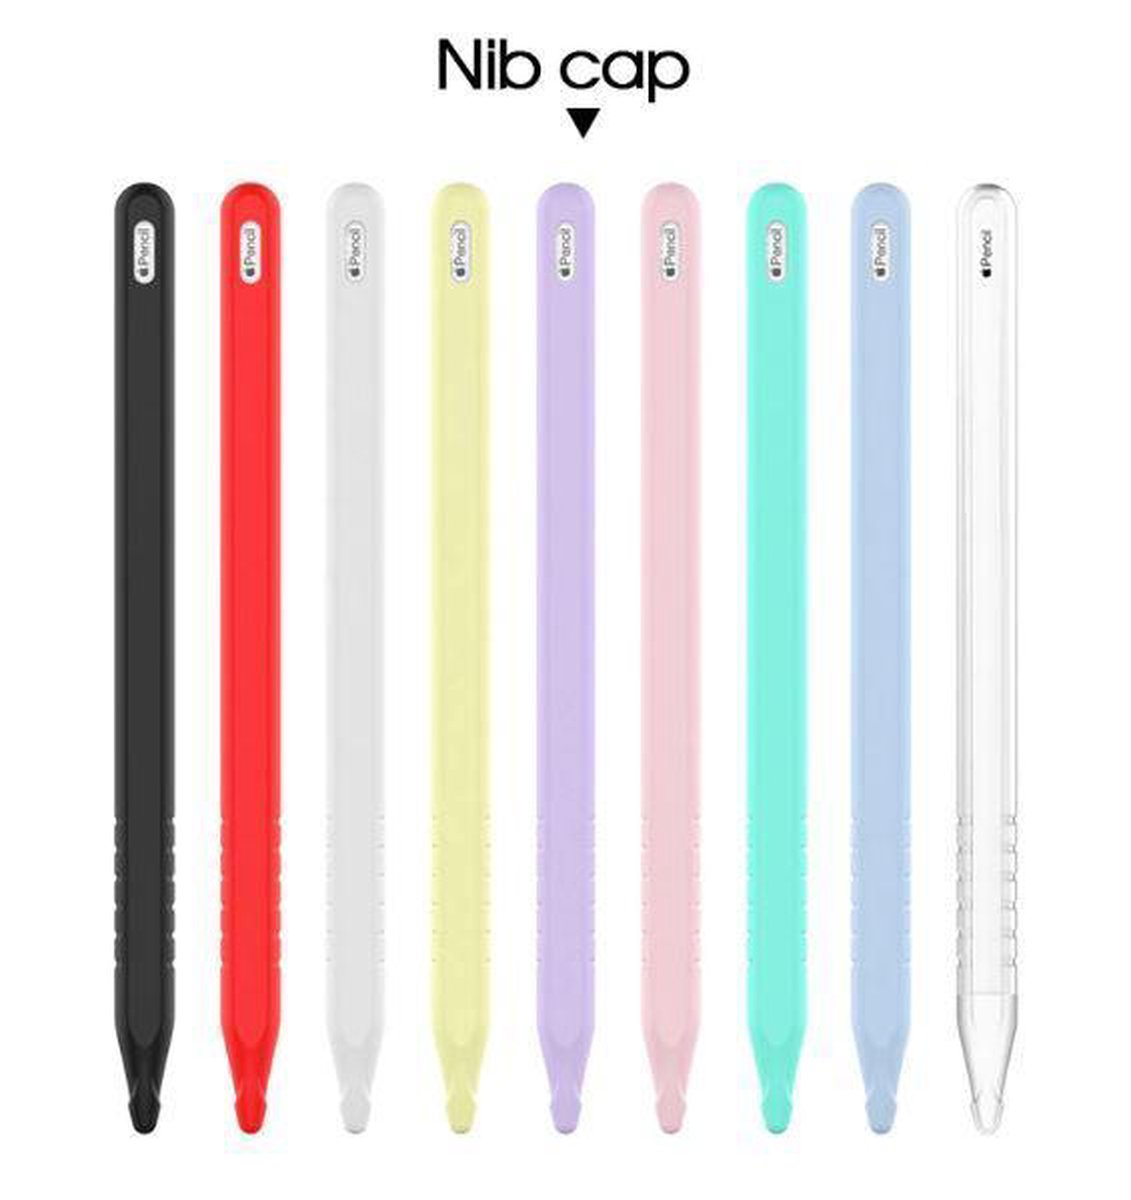 AHASTYLE Duotone Coque de Protection en Silicone pour Apple Pencil 2nd génération Apple iPad Pro 11/12.9 Pouces 2018 Noir/Rouge 2018 